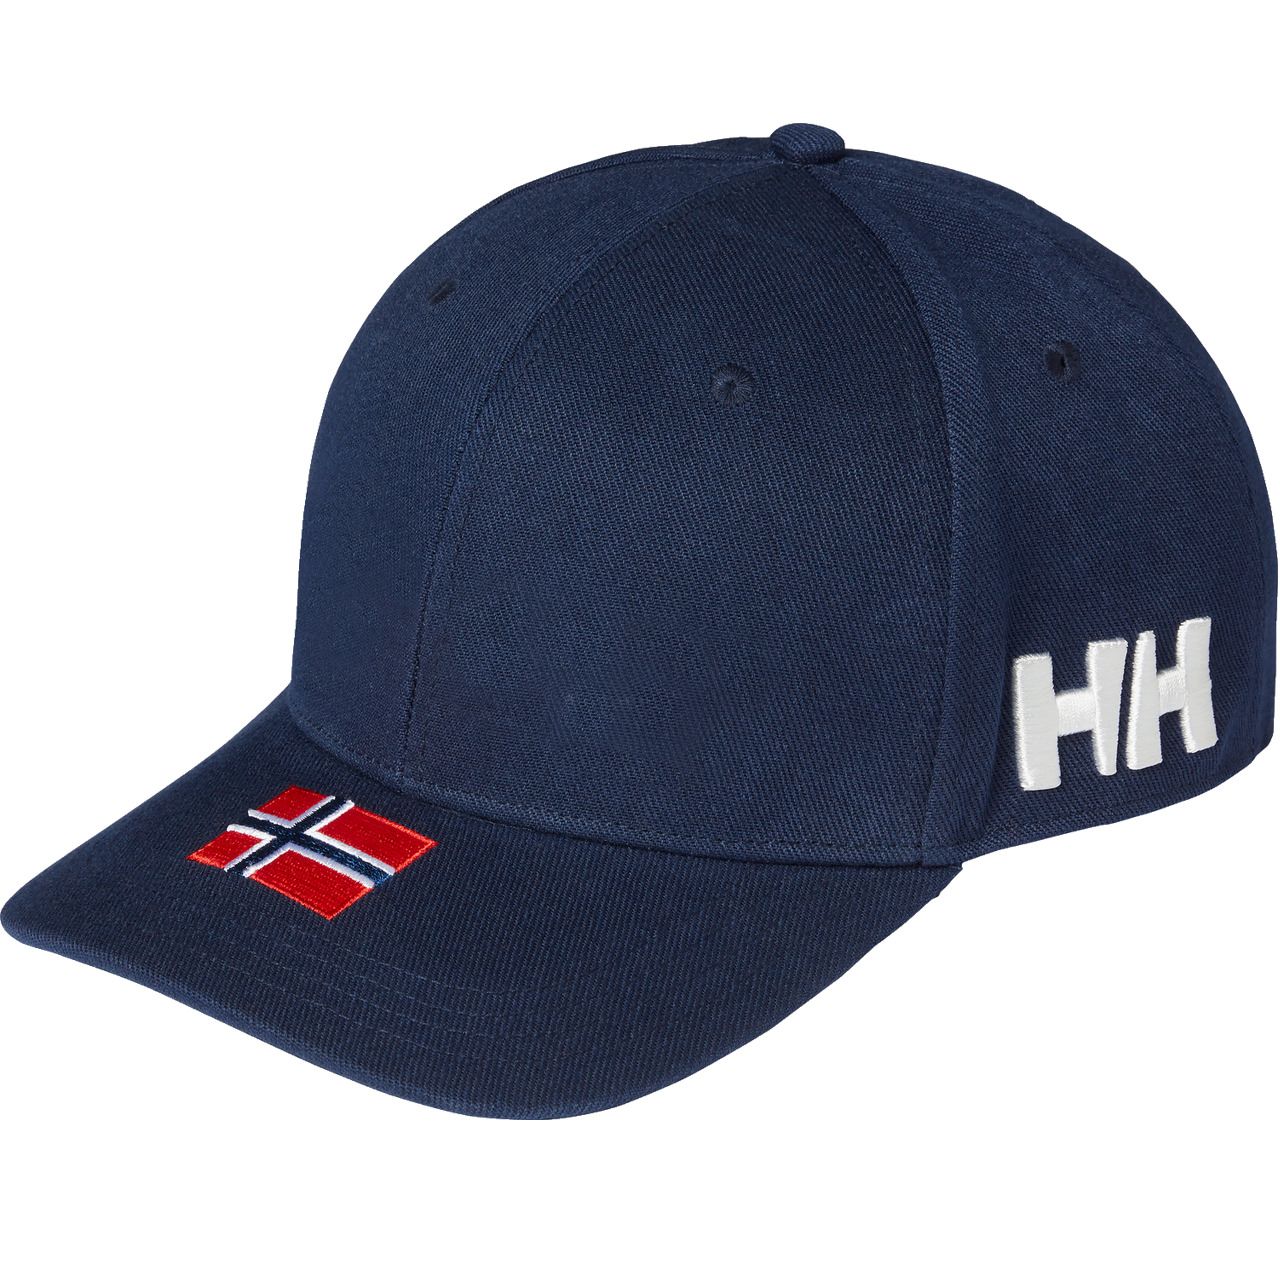 Helly Hansen BRAND CAP navy von Helly Hansen